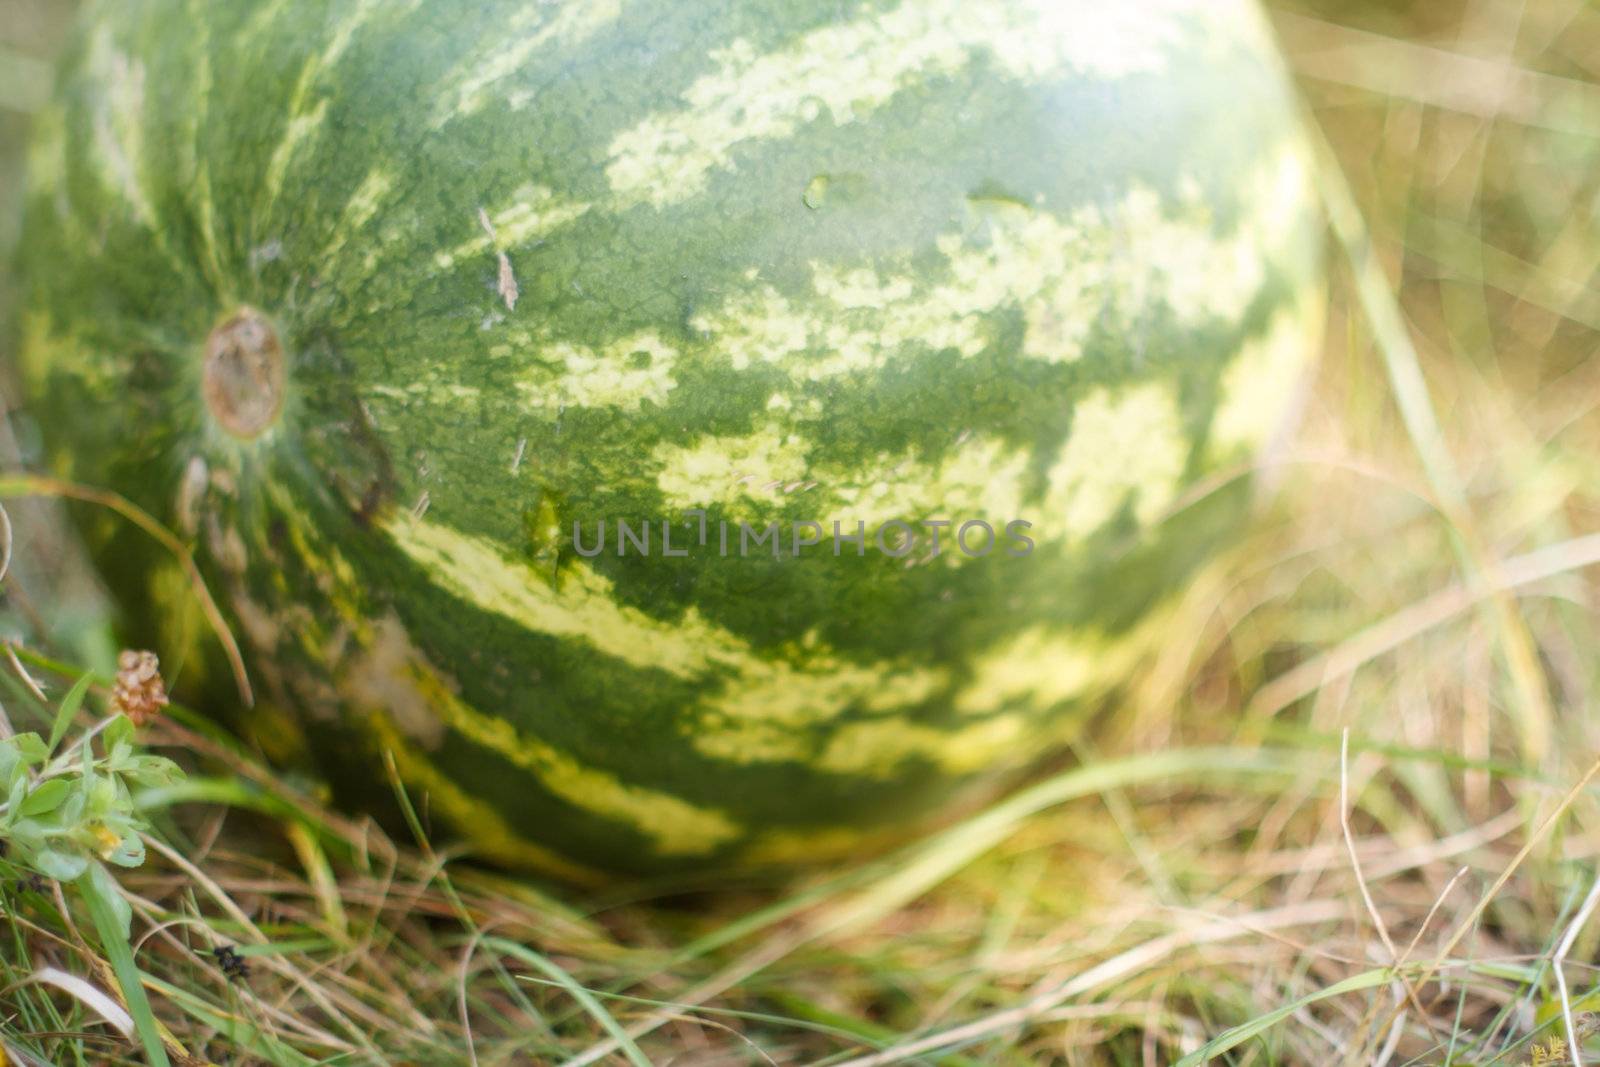 watermelon growing in the field